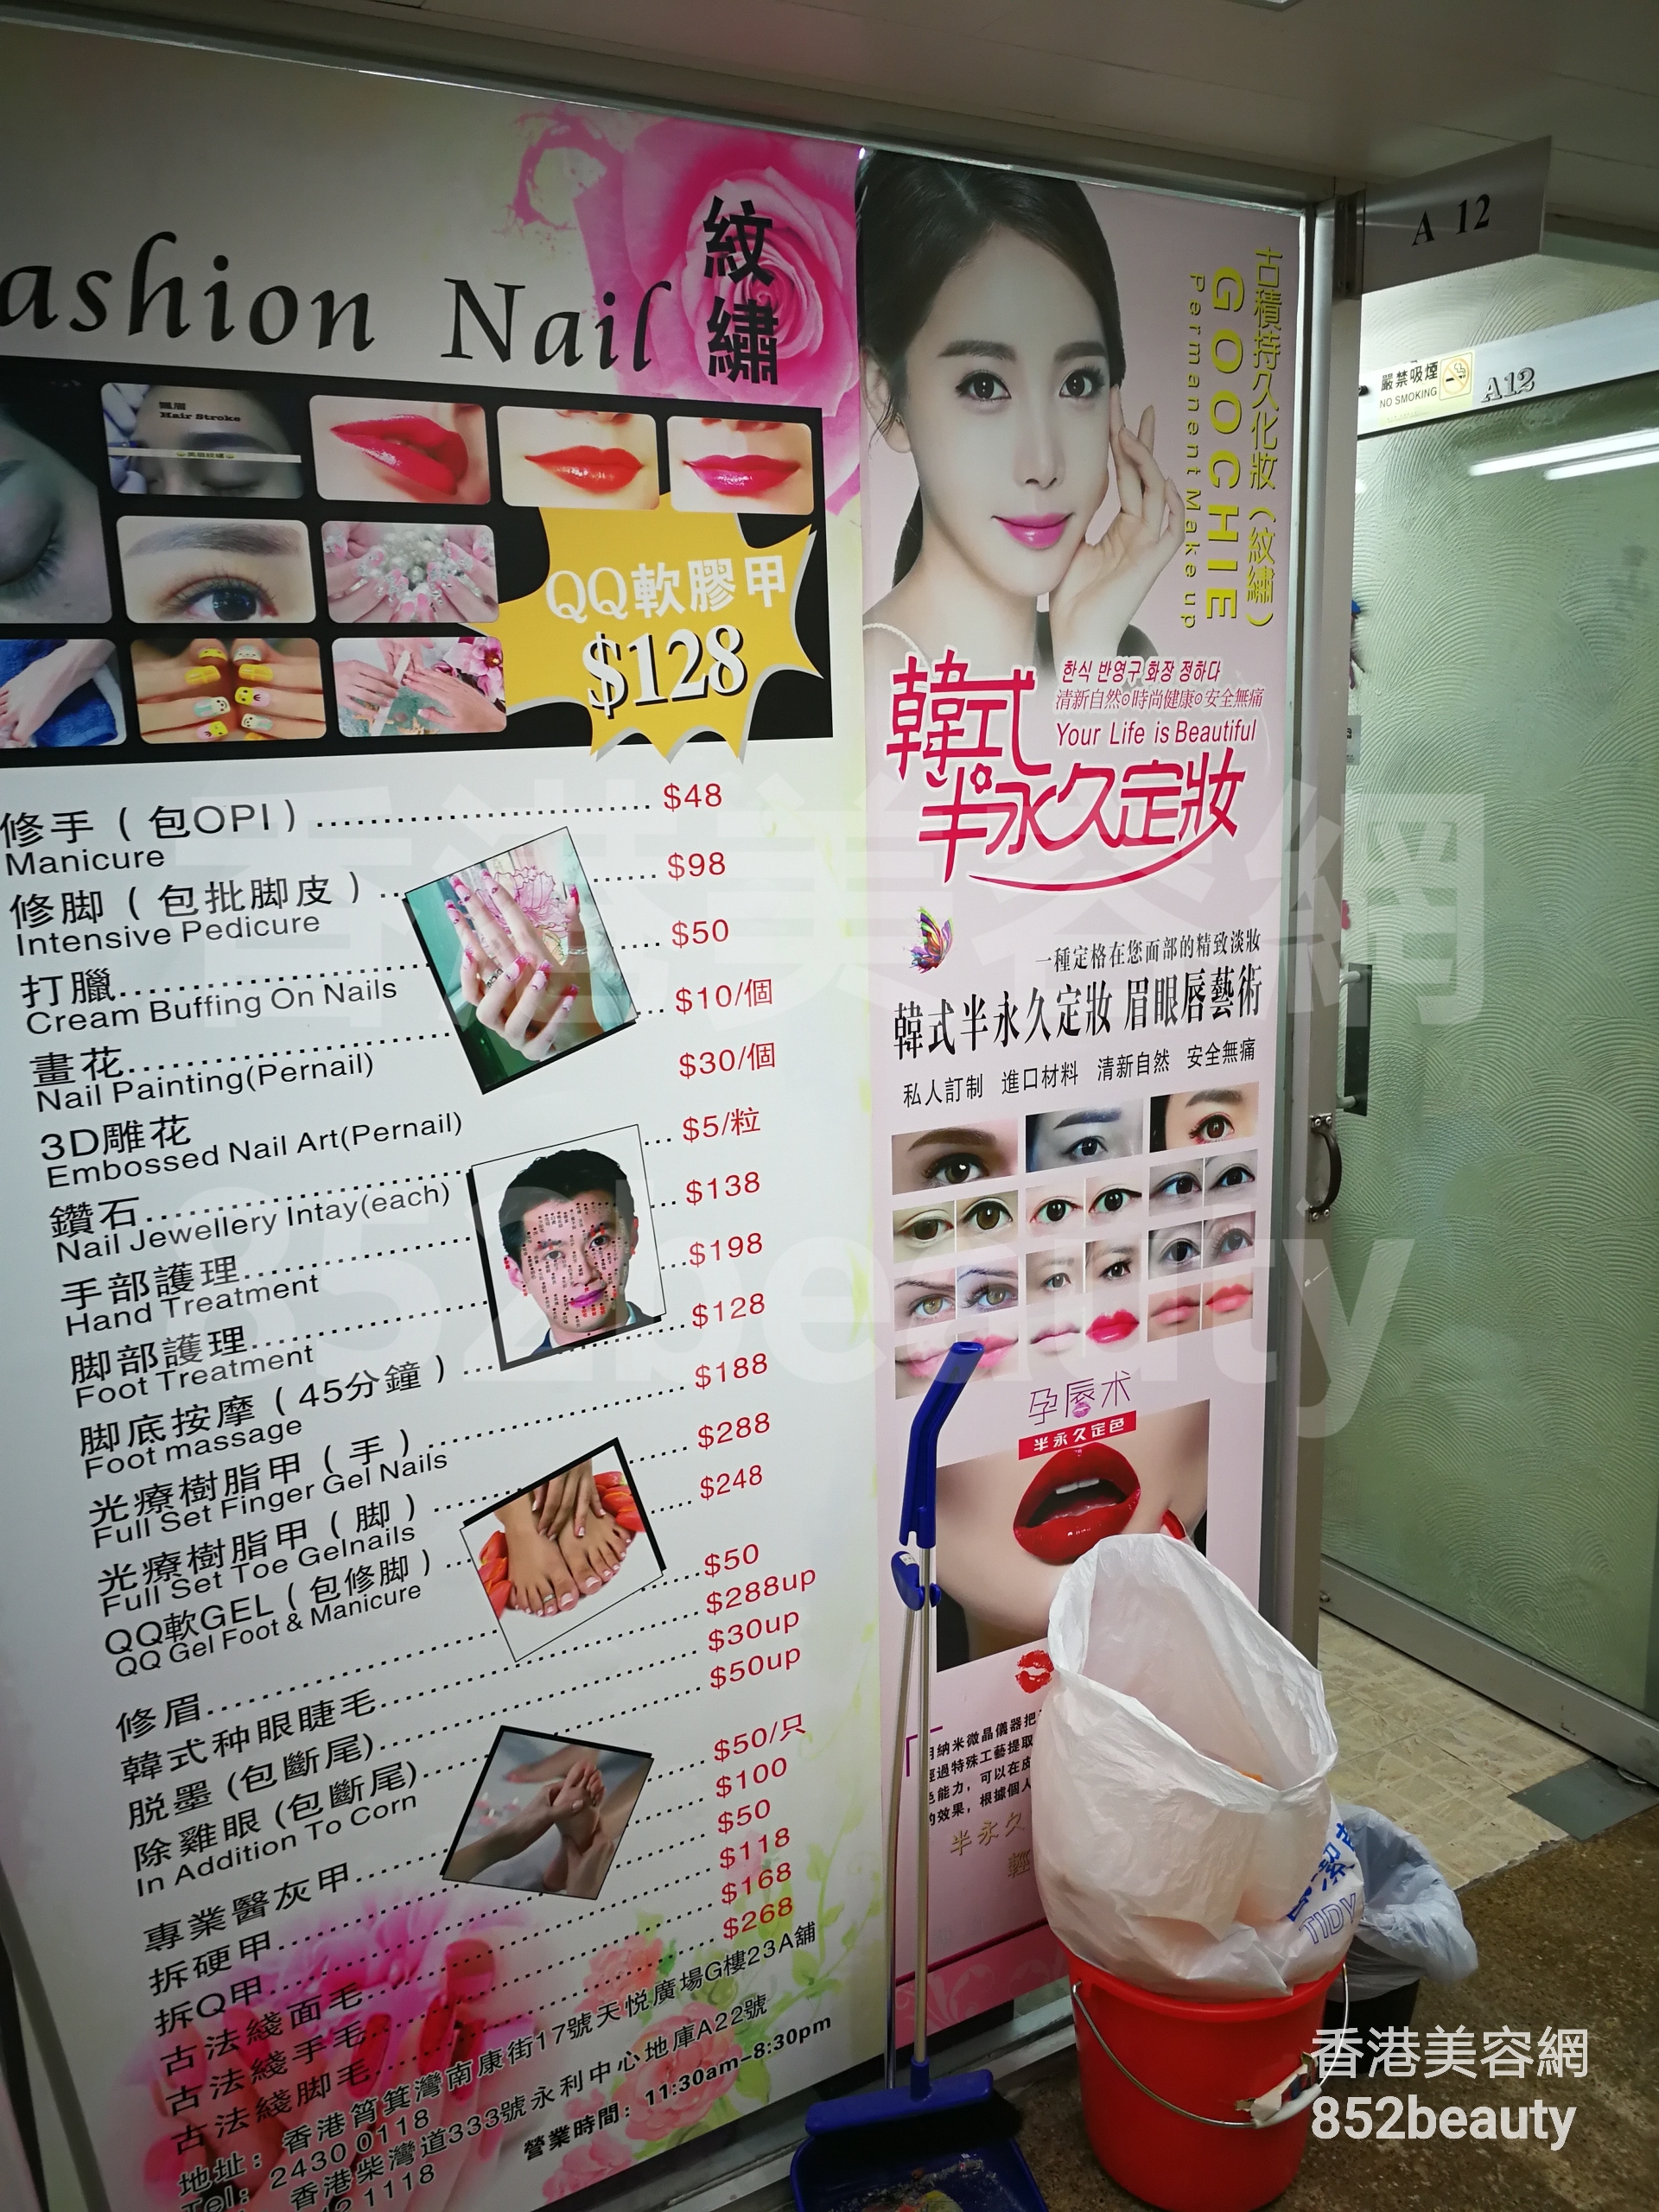 Manicure: Fashion Nail